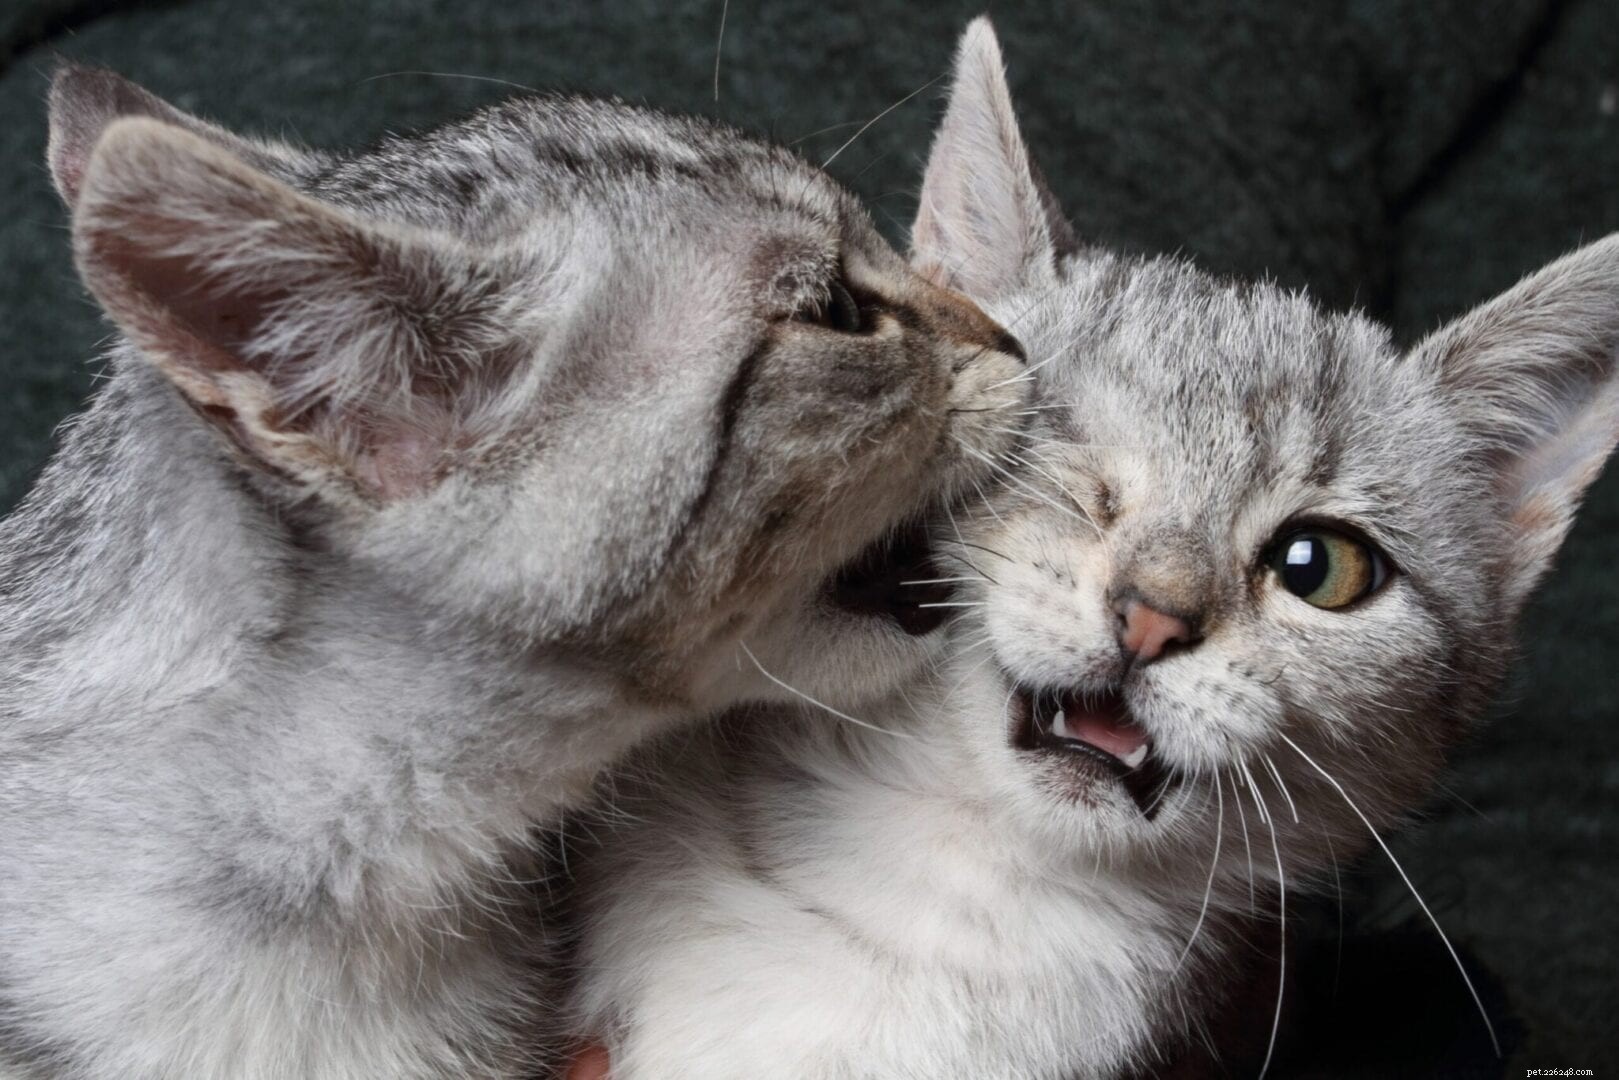 猫が遊んでいるかどうか、または猫が戦っているかどうかを判断する方法